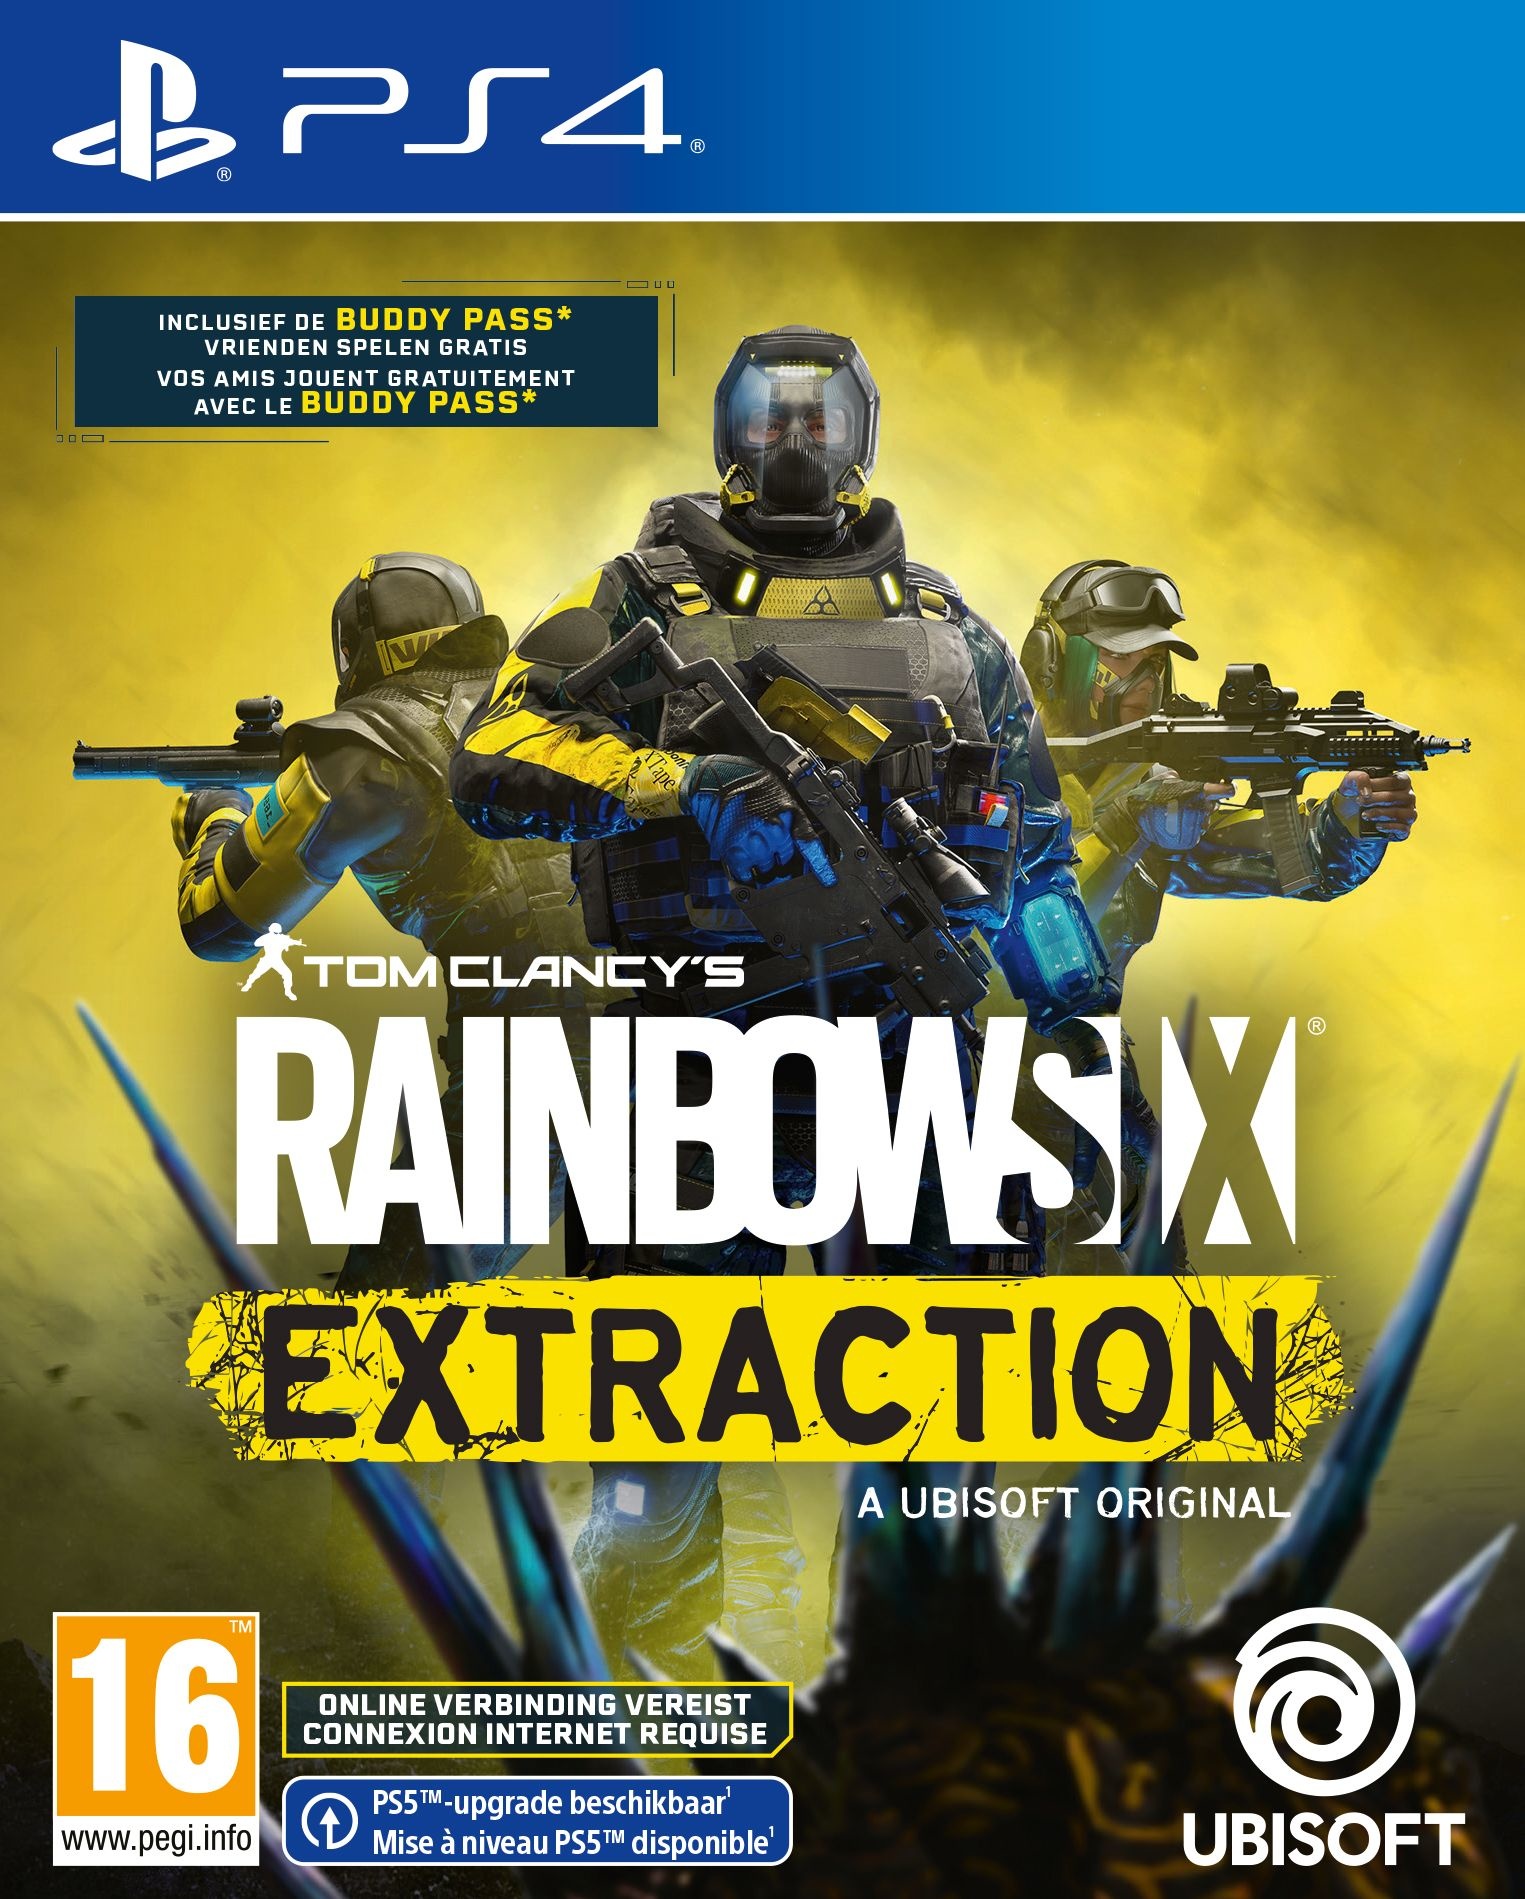 Rainbow Extraction kopen | PS4 GameResource